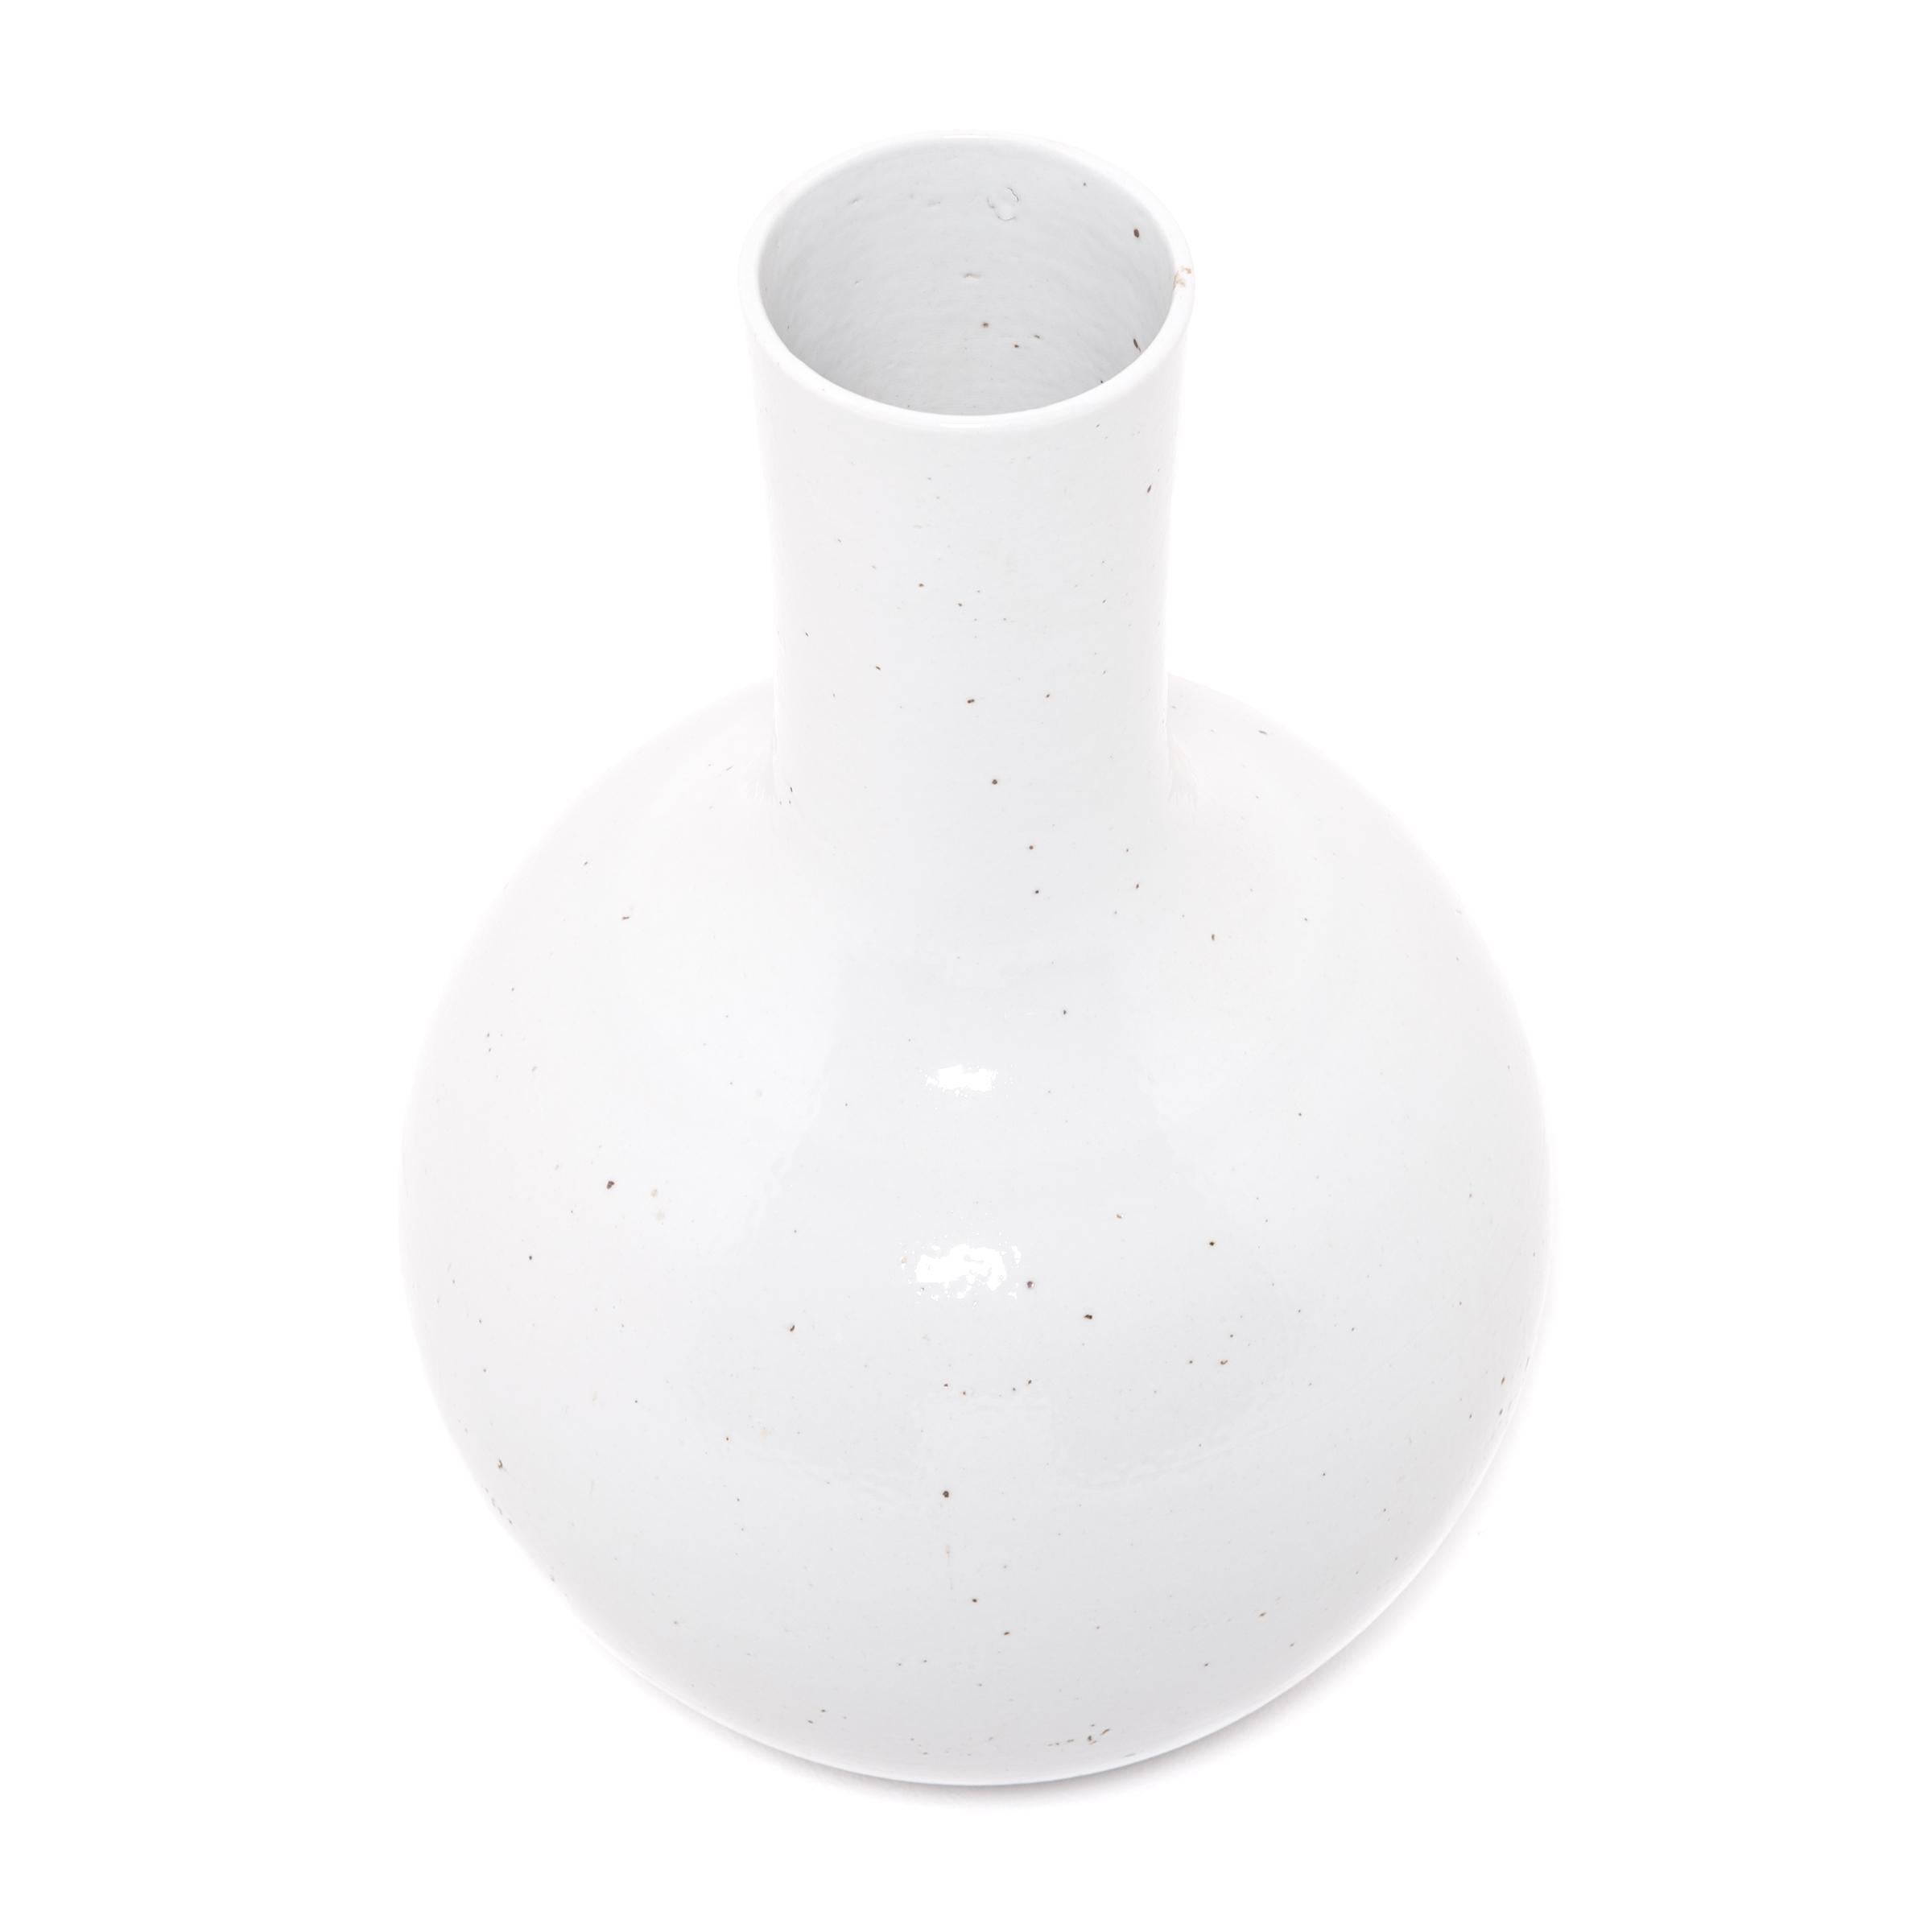 S'inspirant d'une longue tradition chinoise de céramiques monochromes, ce vase austère à long col est émaillé d'un blanc serein, inspiré des nuages. Fabriqués dans la province du Zhejiang, les céramistes locaux ont réinterprété cette forme très